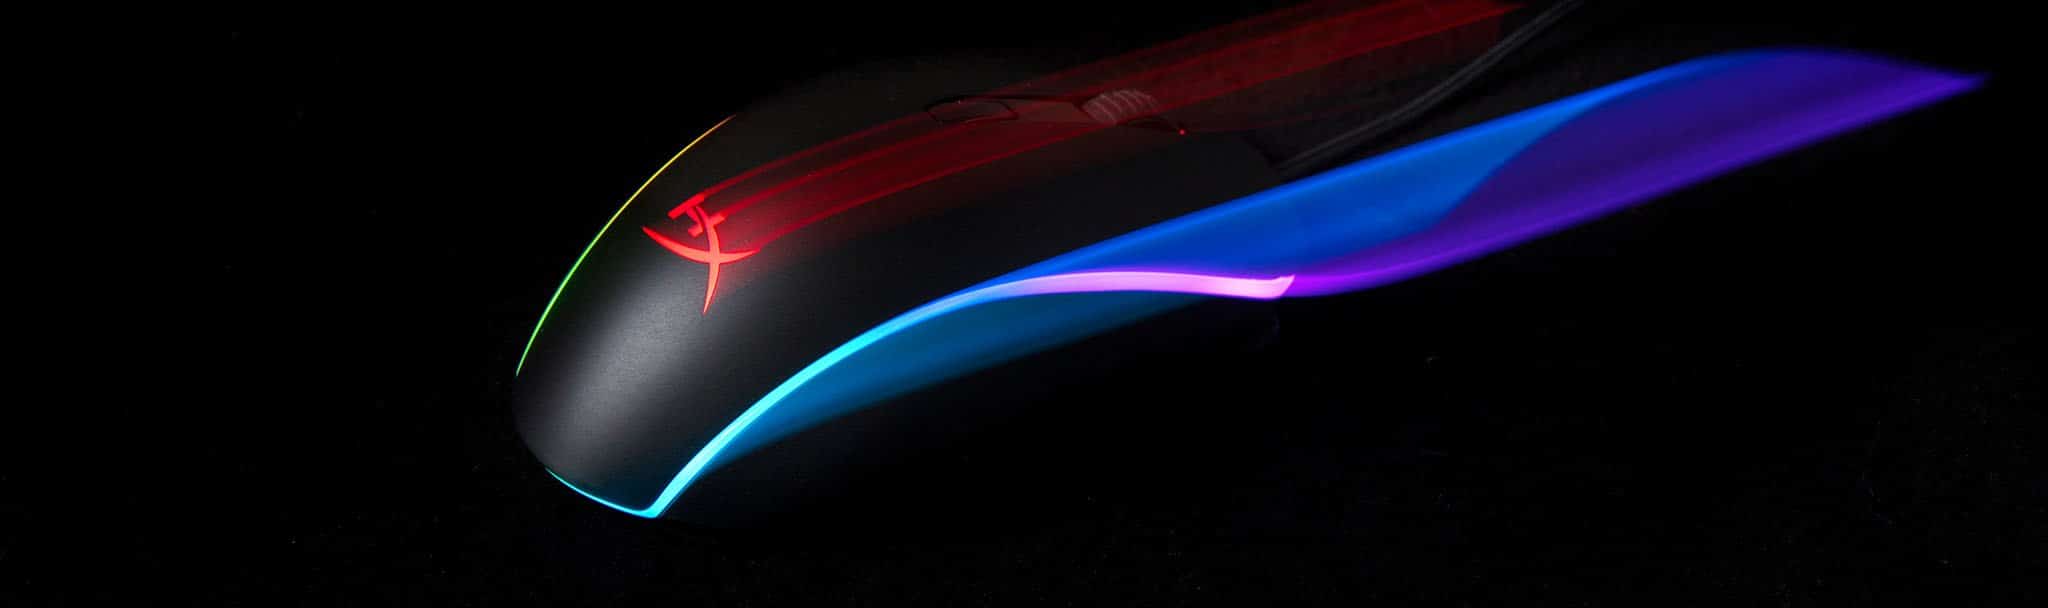 Herní myš s technologií HyperX Pulsefire Surge RGB, analýza / recenze, 16 000 DPI